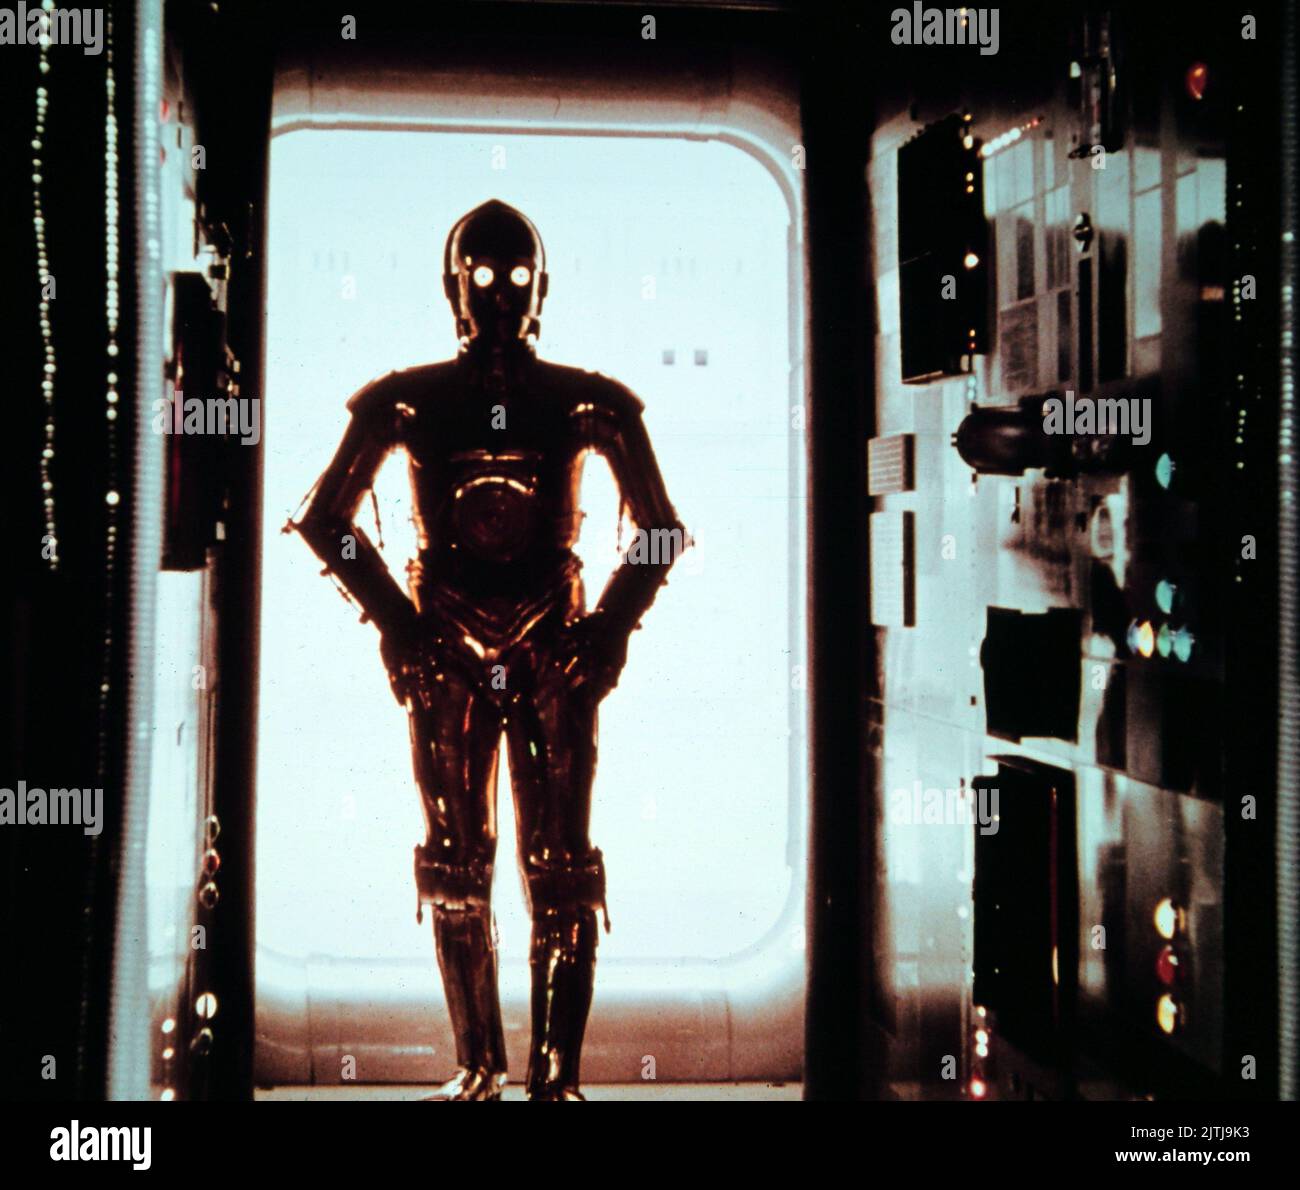 Star Wars, aka Krieg der Sterne, USA 1977, Regie: George Lucas, Charaktere: C-3PO im Gegenlicht Foto Stock